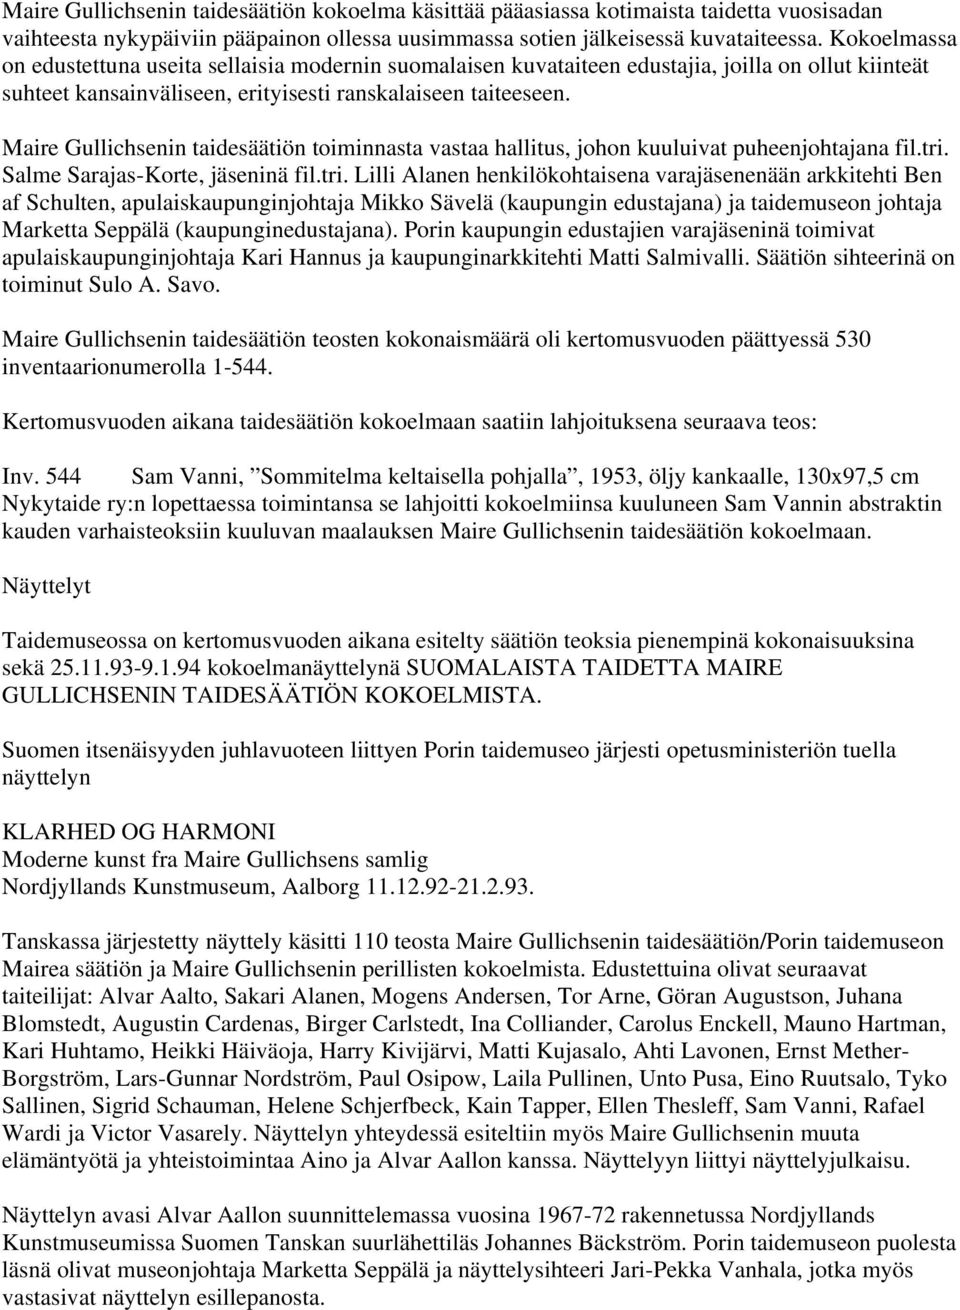 Maire Gullichsenin taidesäätiön toiminnasta vastaa hallitus, johon kuuluivat puheenjohtajana fil.tri.